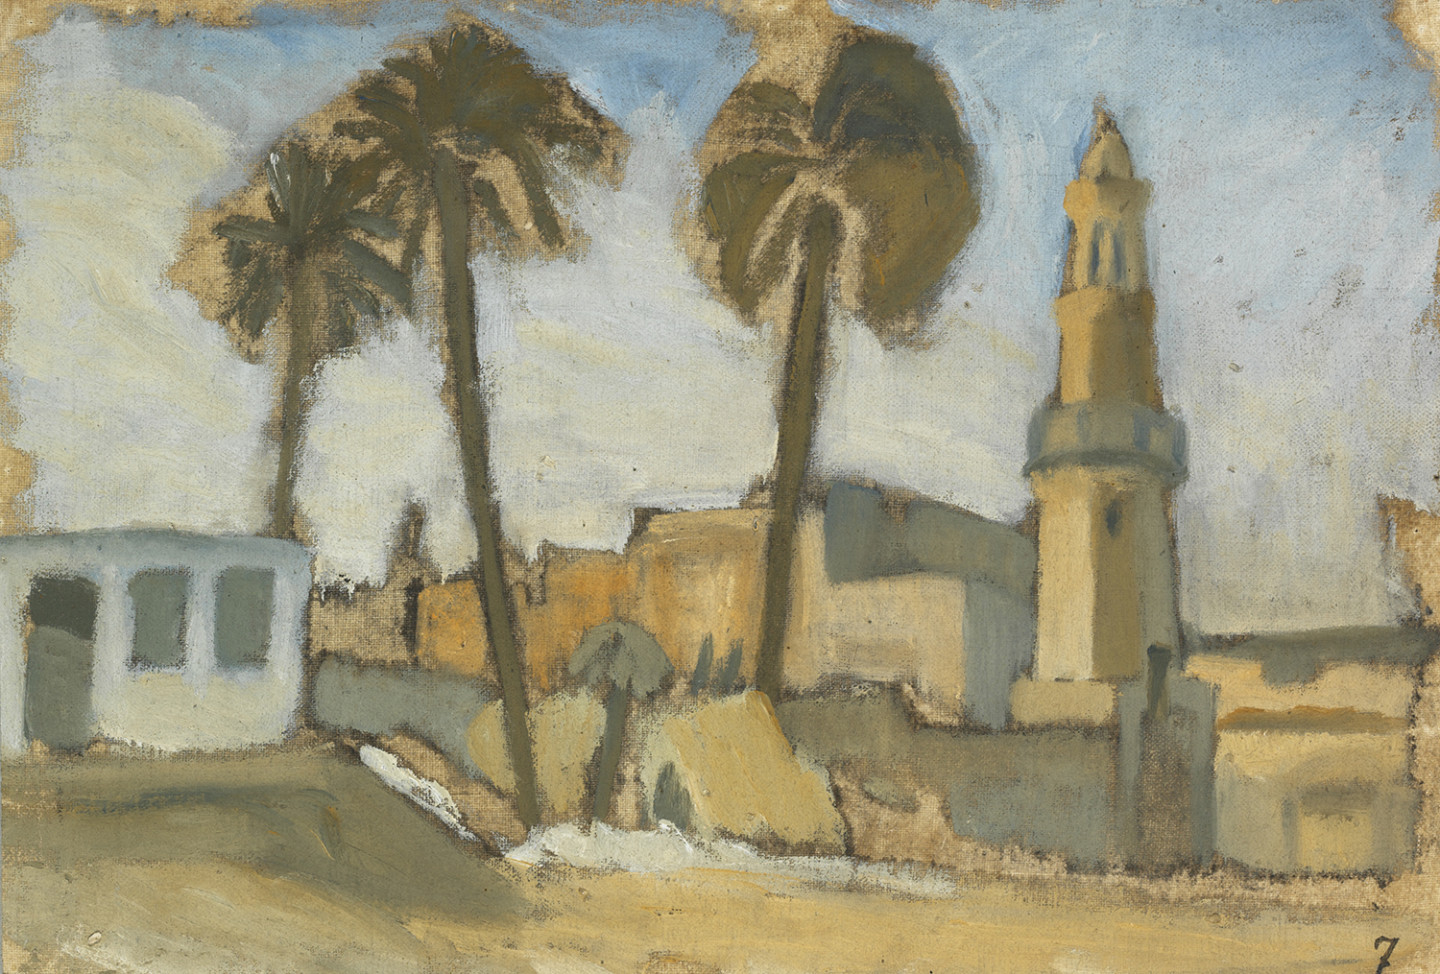 Målning med palmer och byggnader